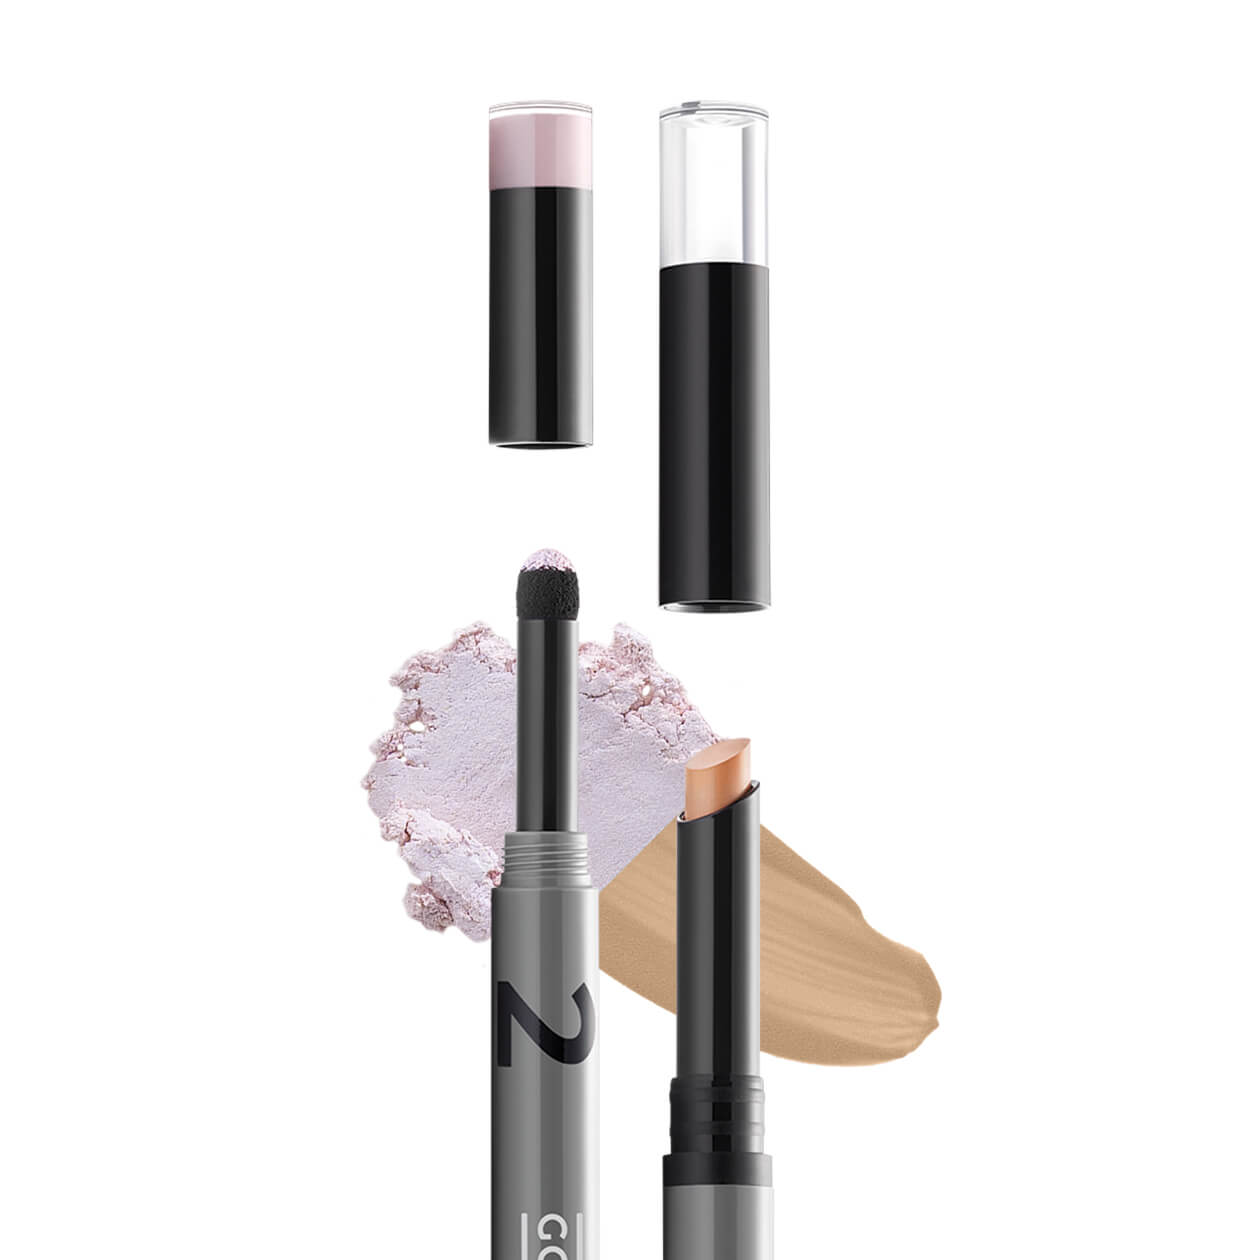 GOKOS - Beauty to go - Indie-Makeup-Brand mit Stiften 22